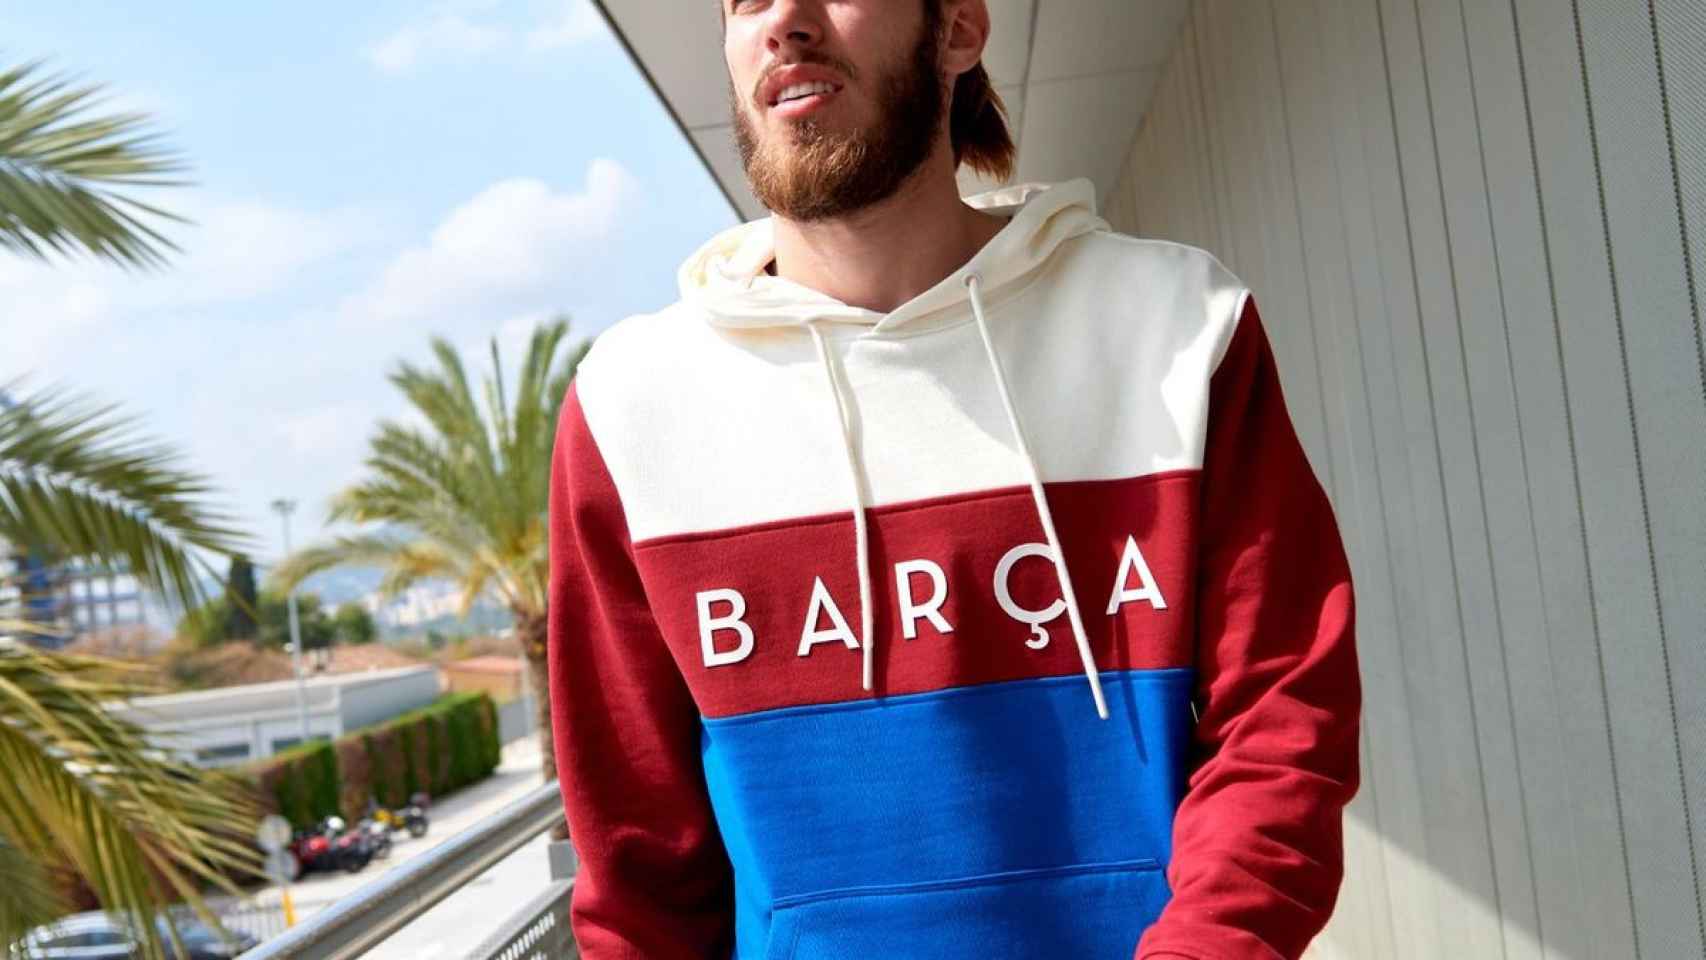 El Barça ha presentado su nueva colección de ropa urbana Color Block. / FCB